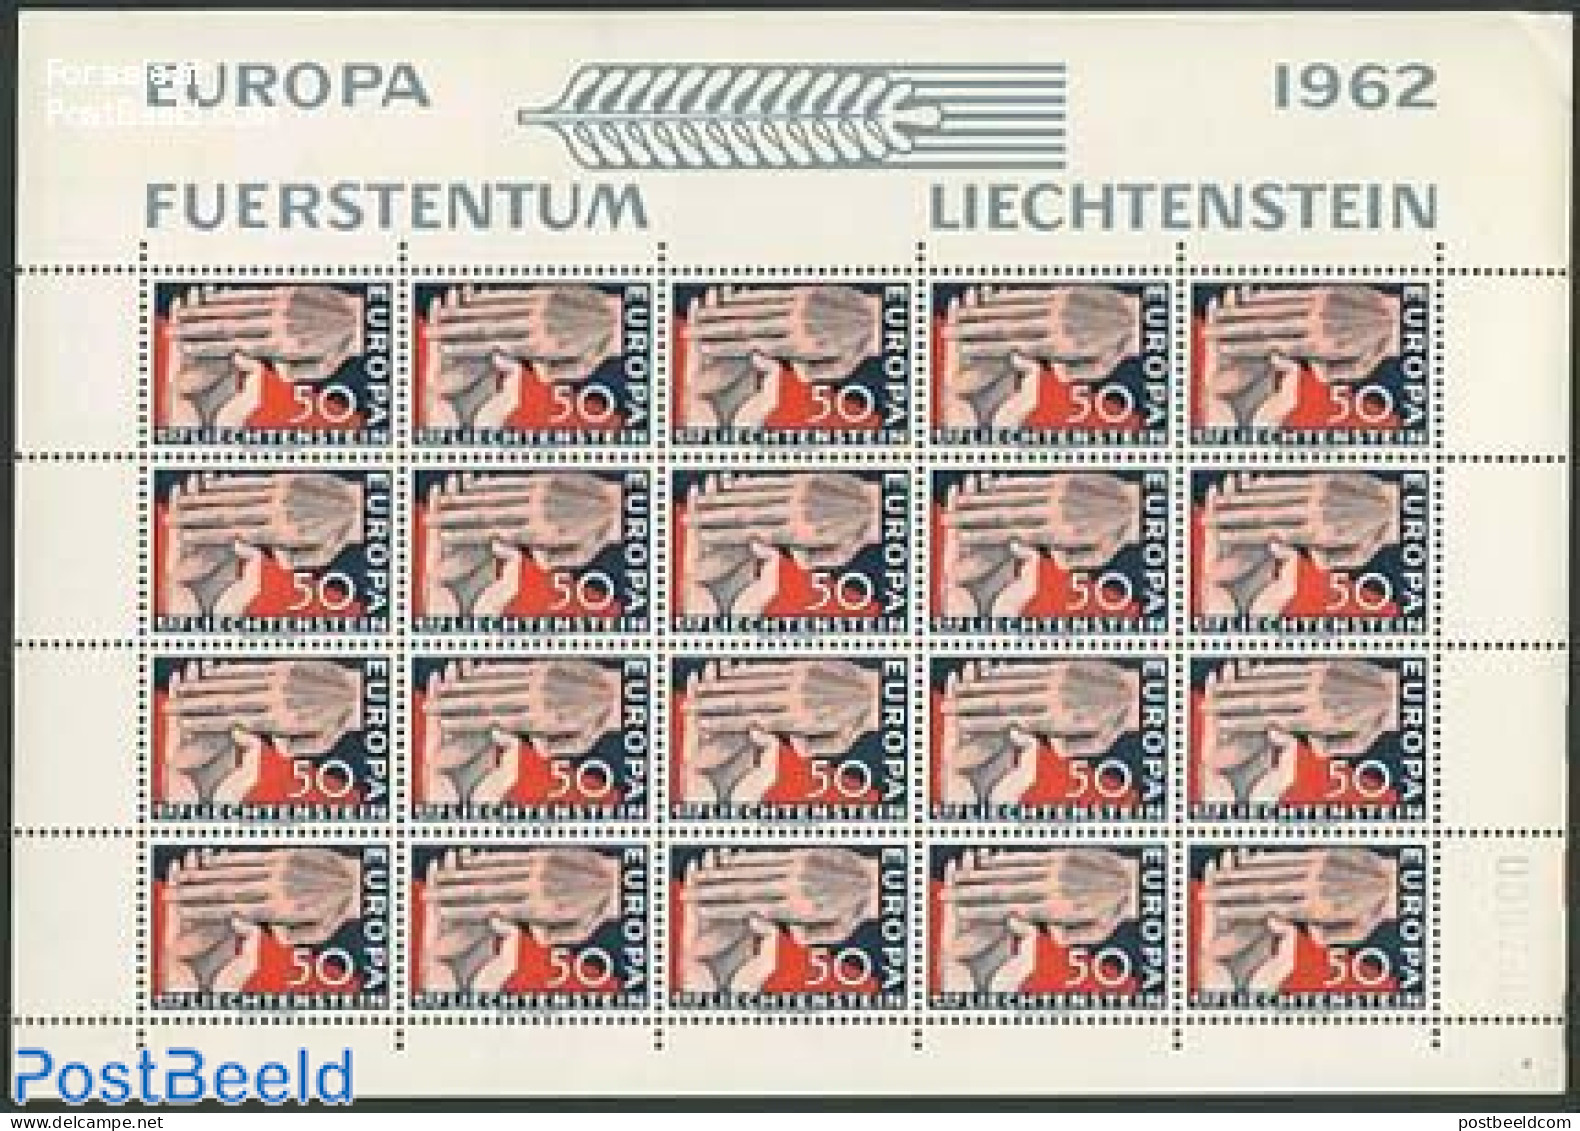 Liechtenstein 1962 Europa 1v, M/s, Mint NH, History - Europa (cept) - Unused Stamps